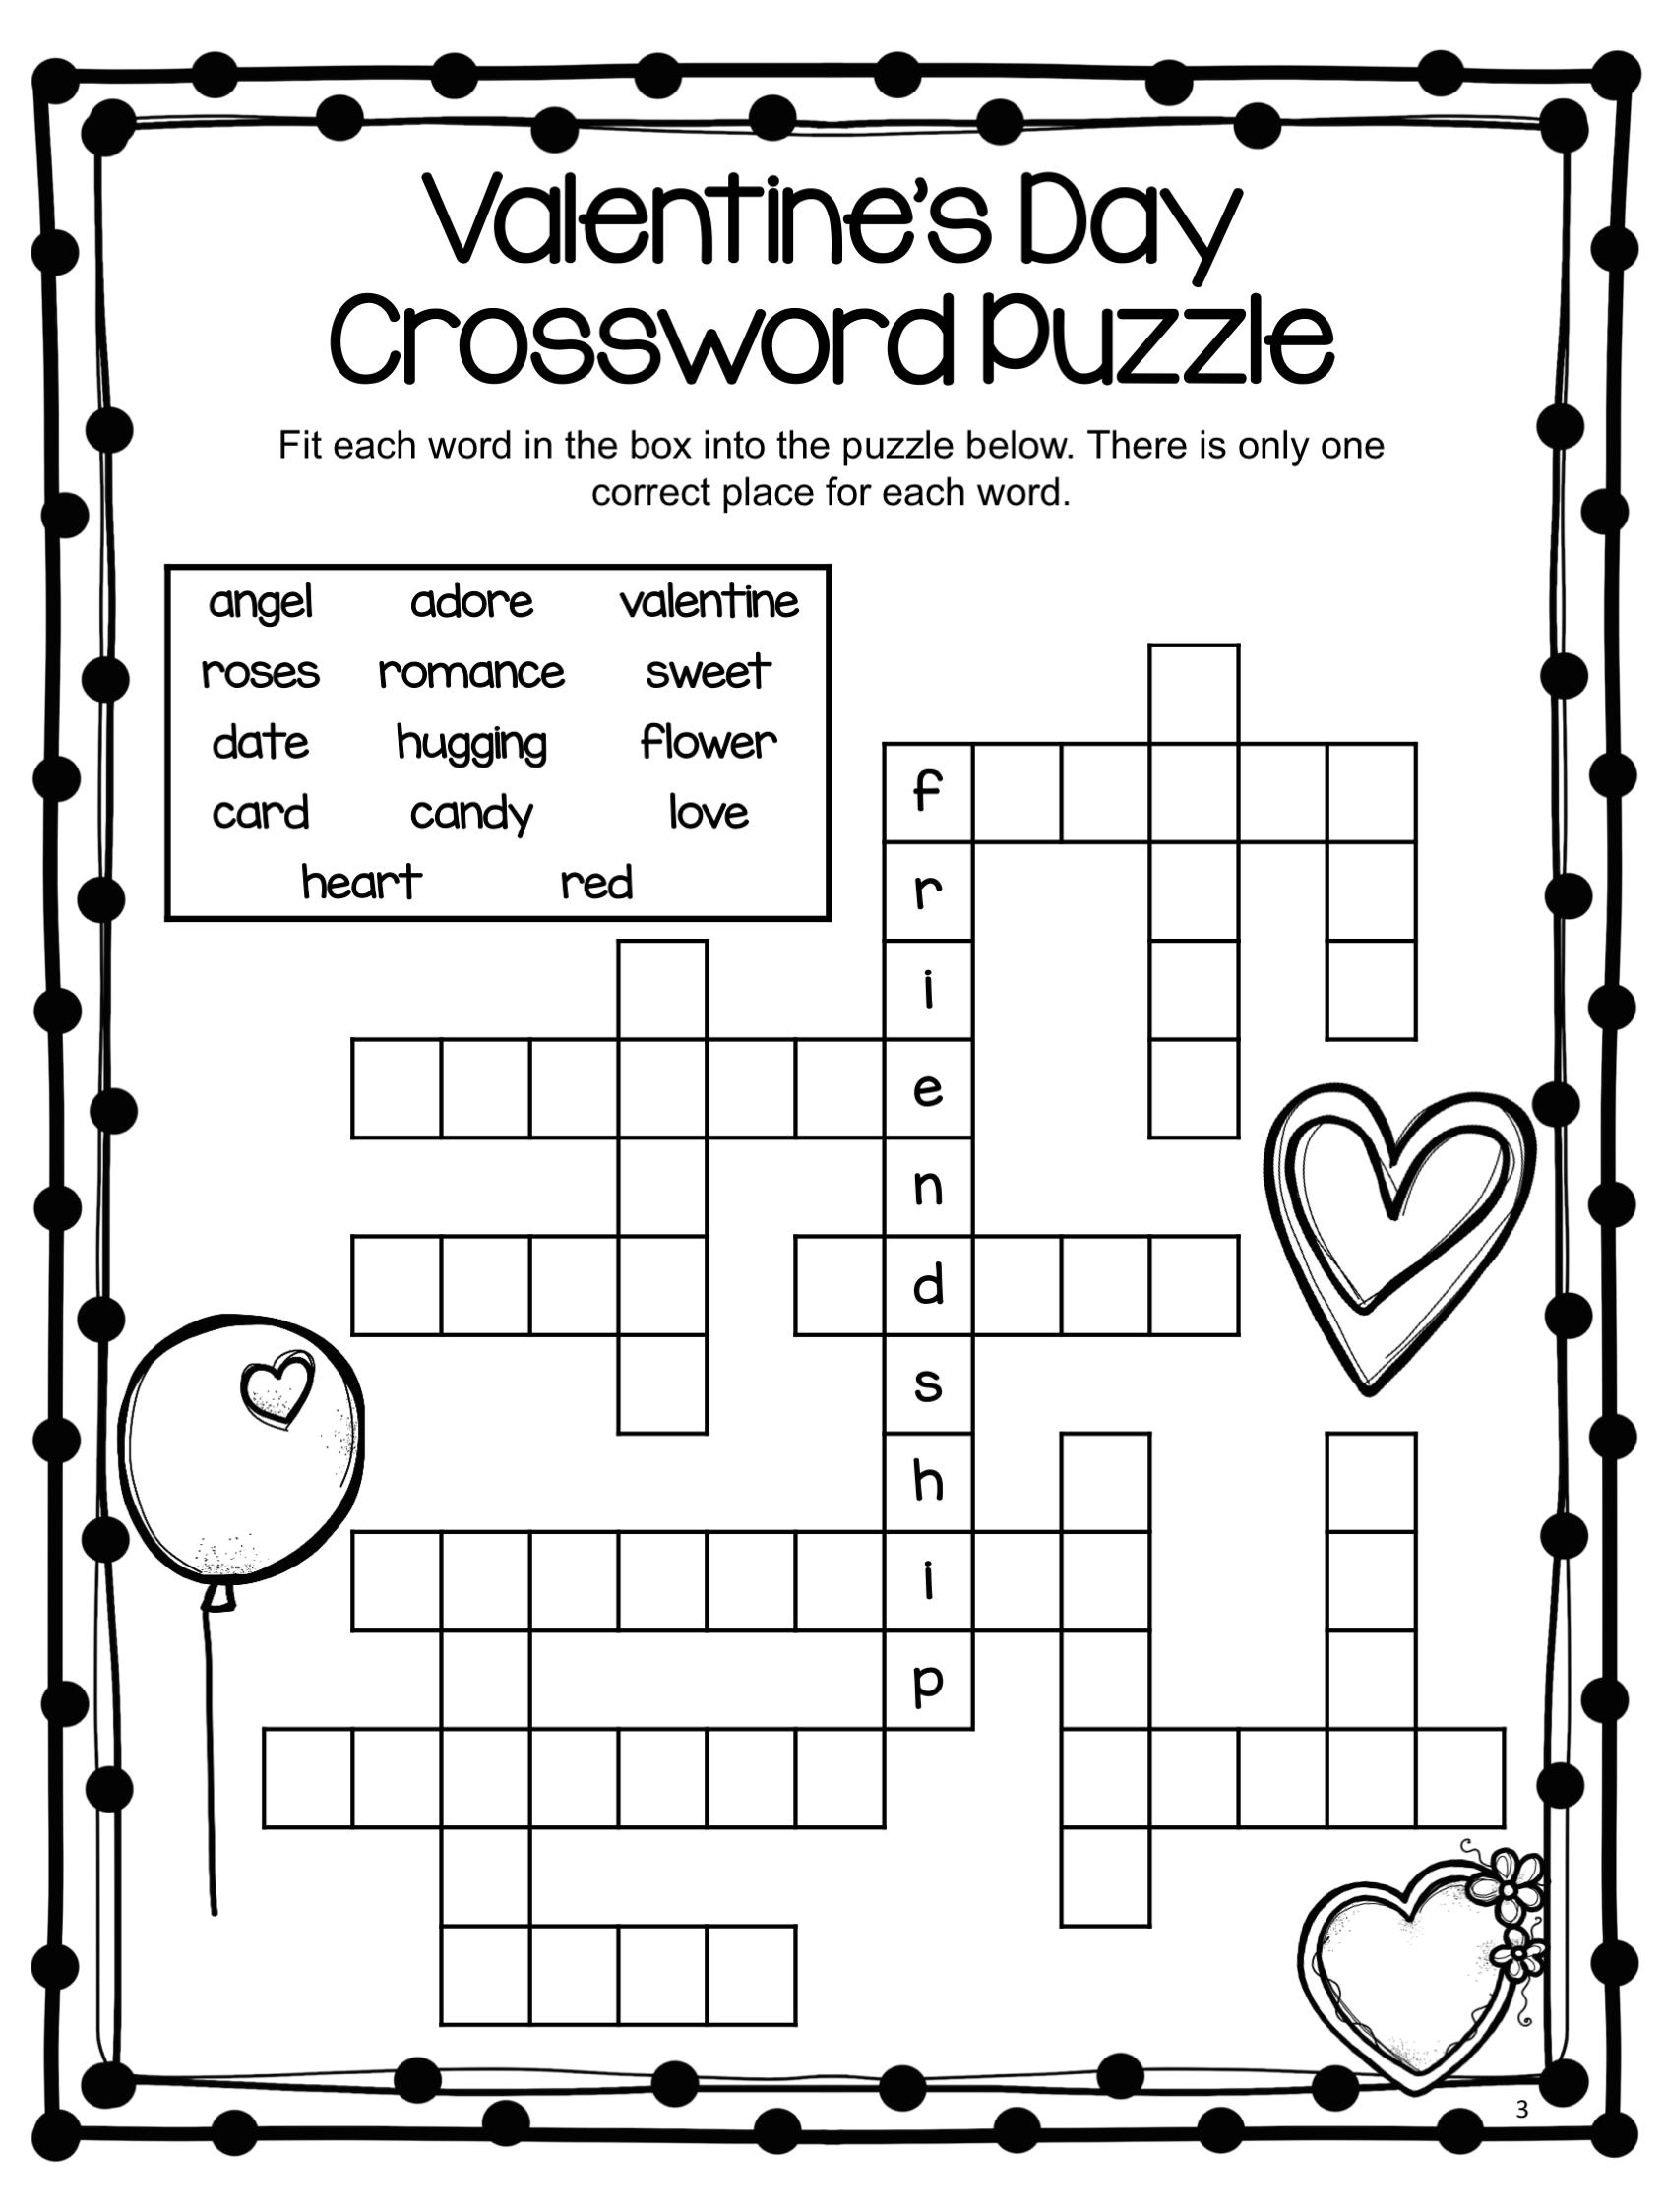 Free Printable Valentine s Day Crossword Puzzles Emma Crossword Puzzles